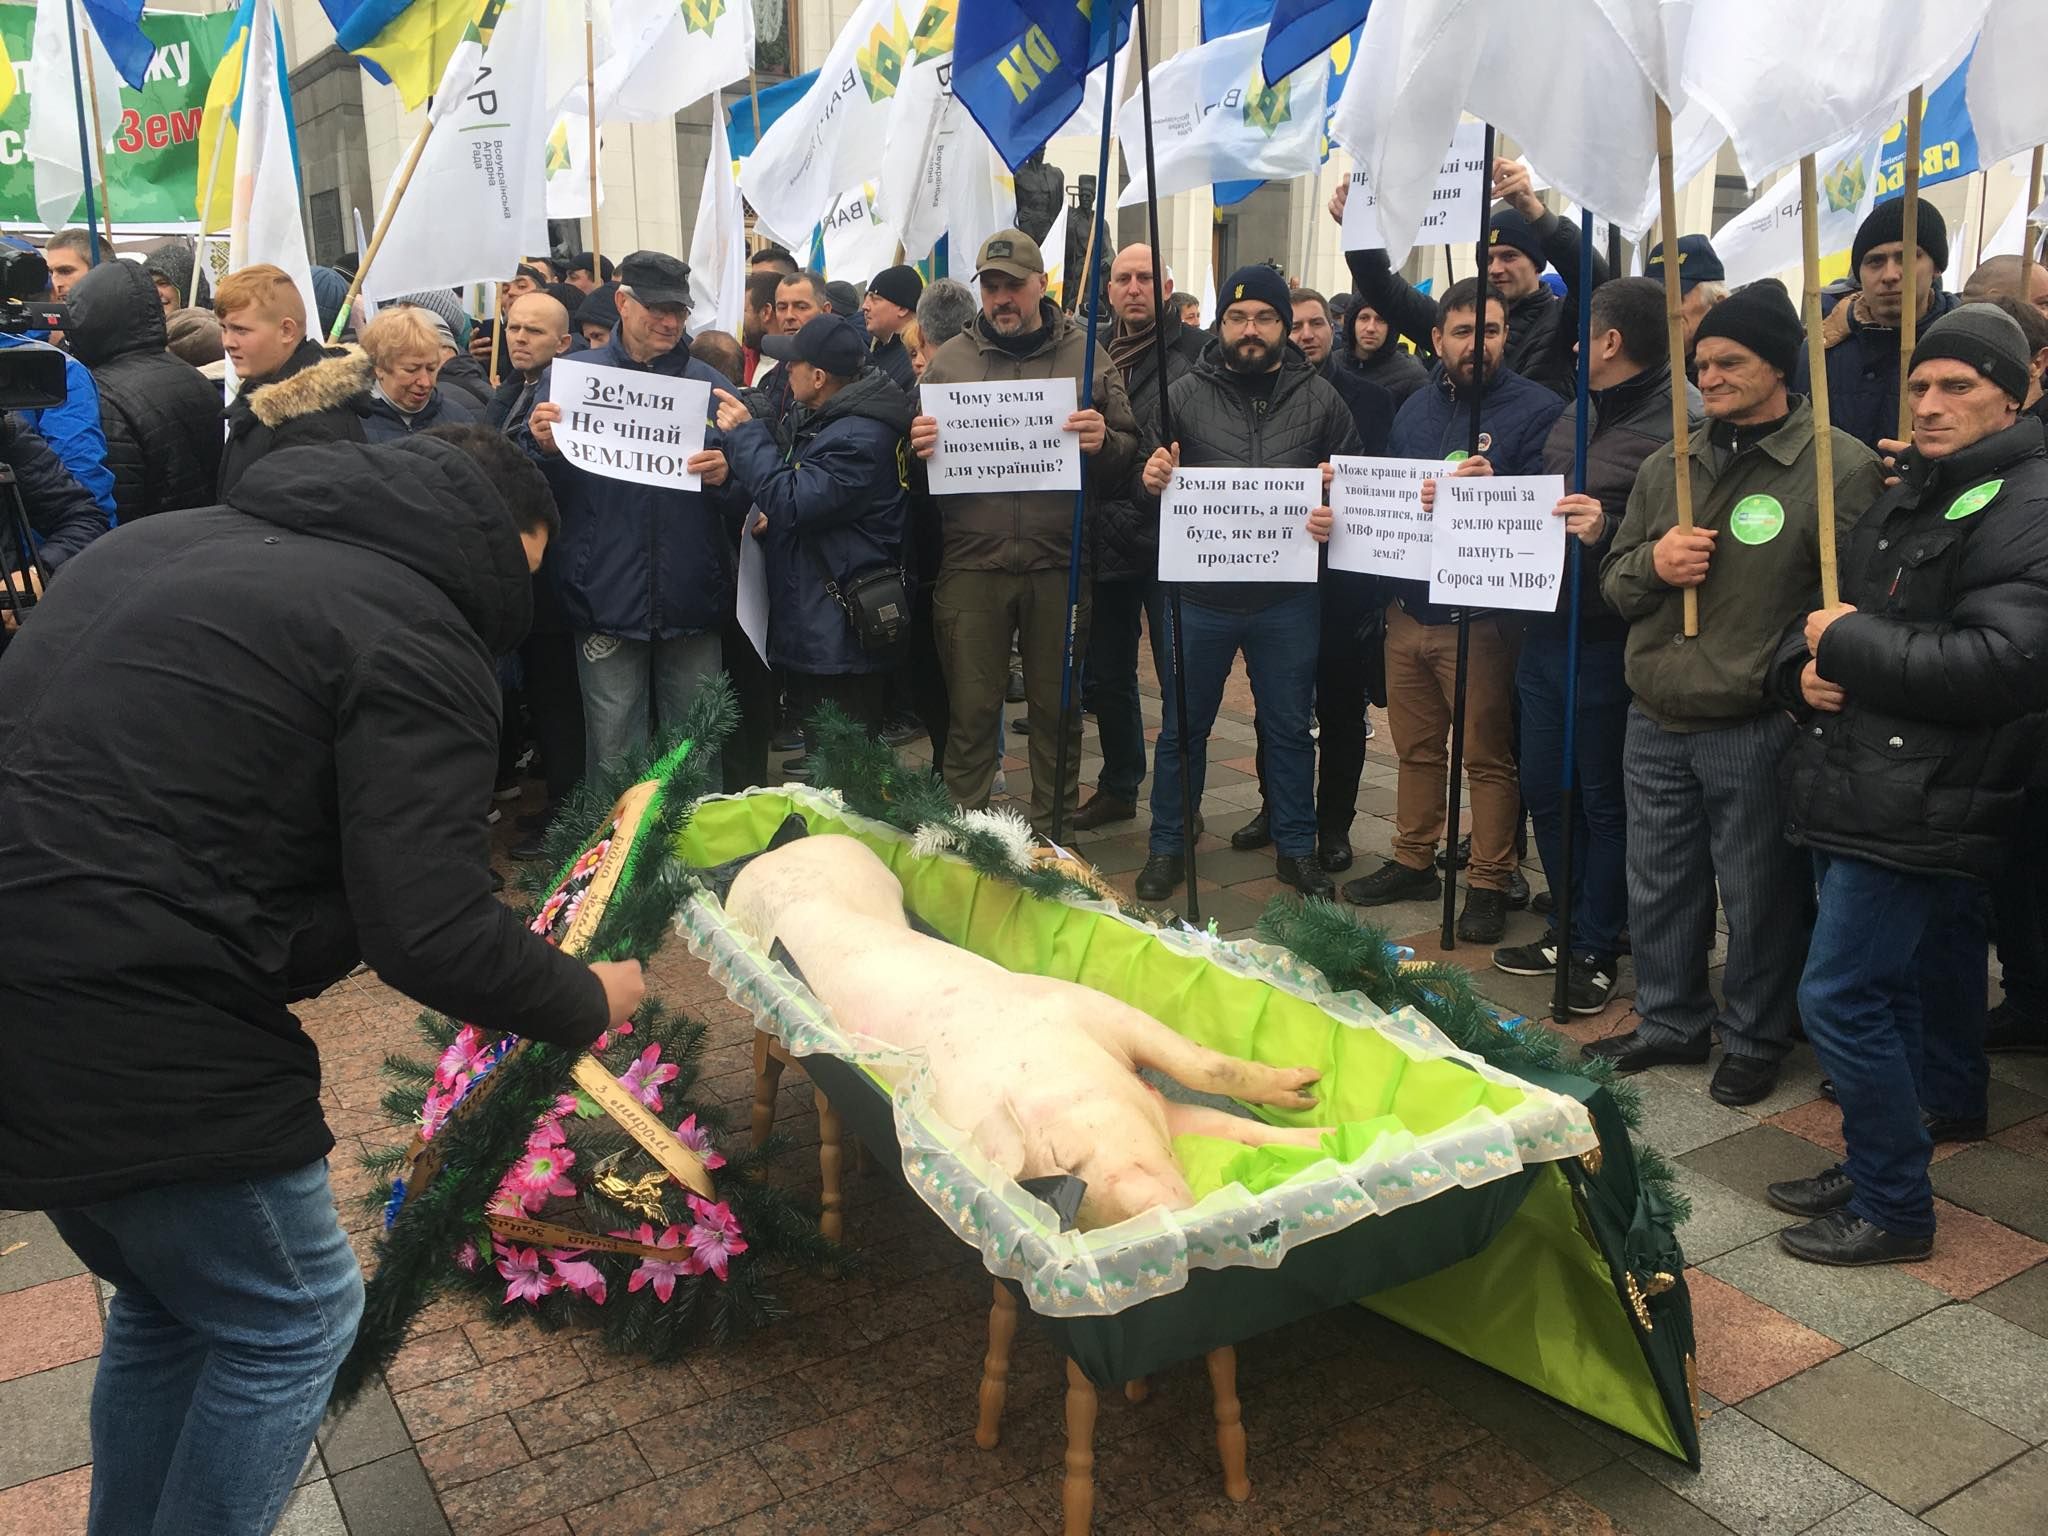 Под Радой проходит митинг против открытия рынка земли, принесли свинью в гробу: фото